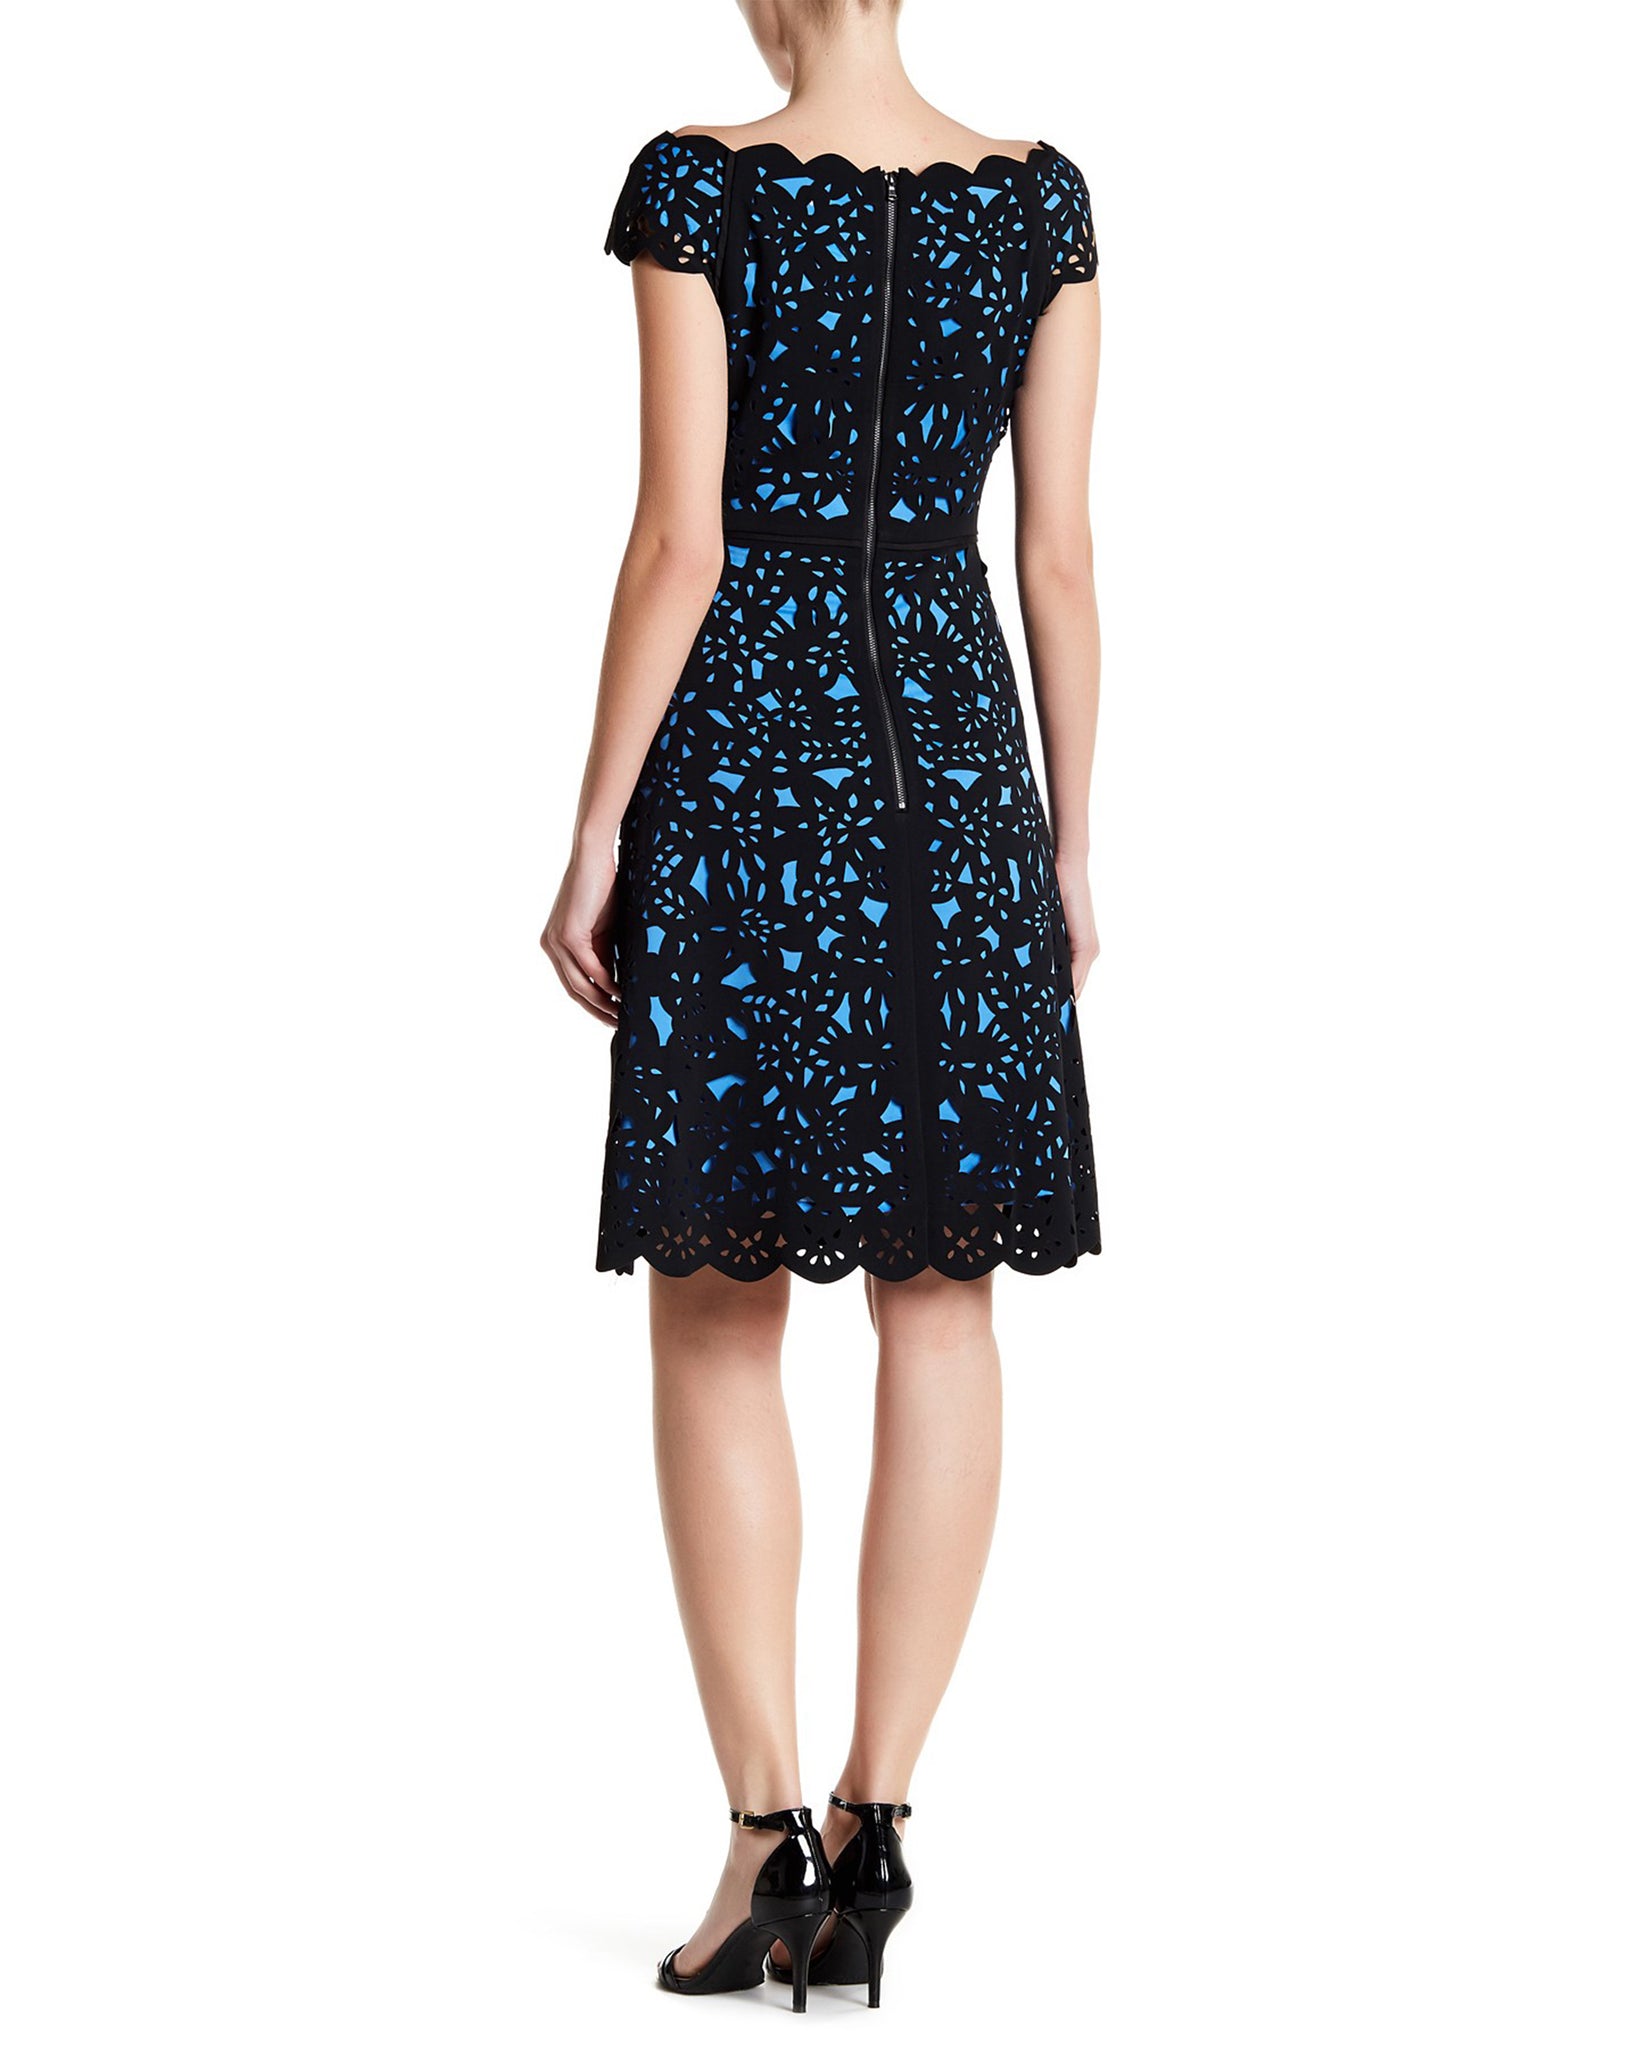 Buy Online Shani Off the Shoulder Laser Cutting Dress in Black/Blue for ...